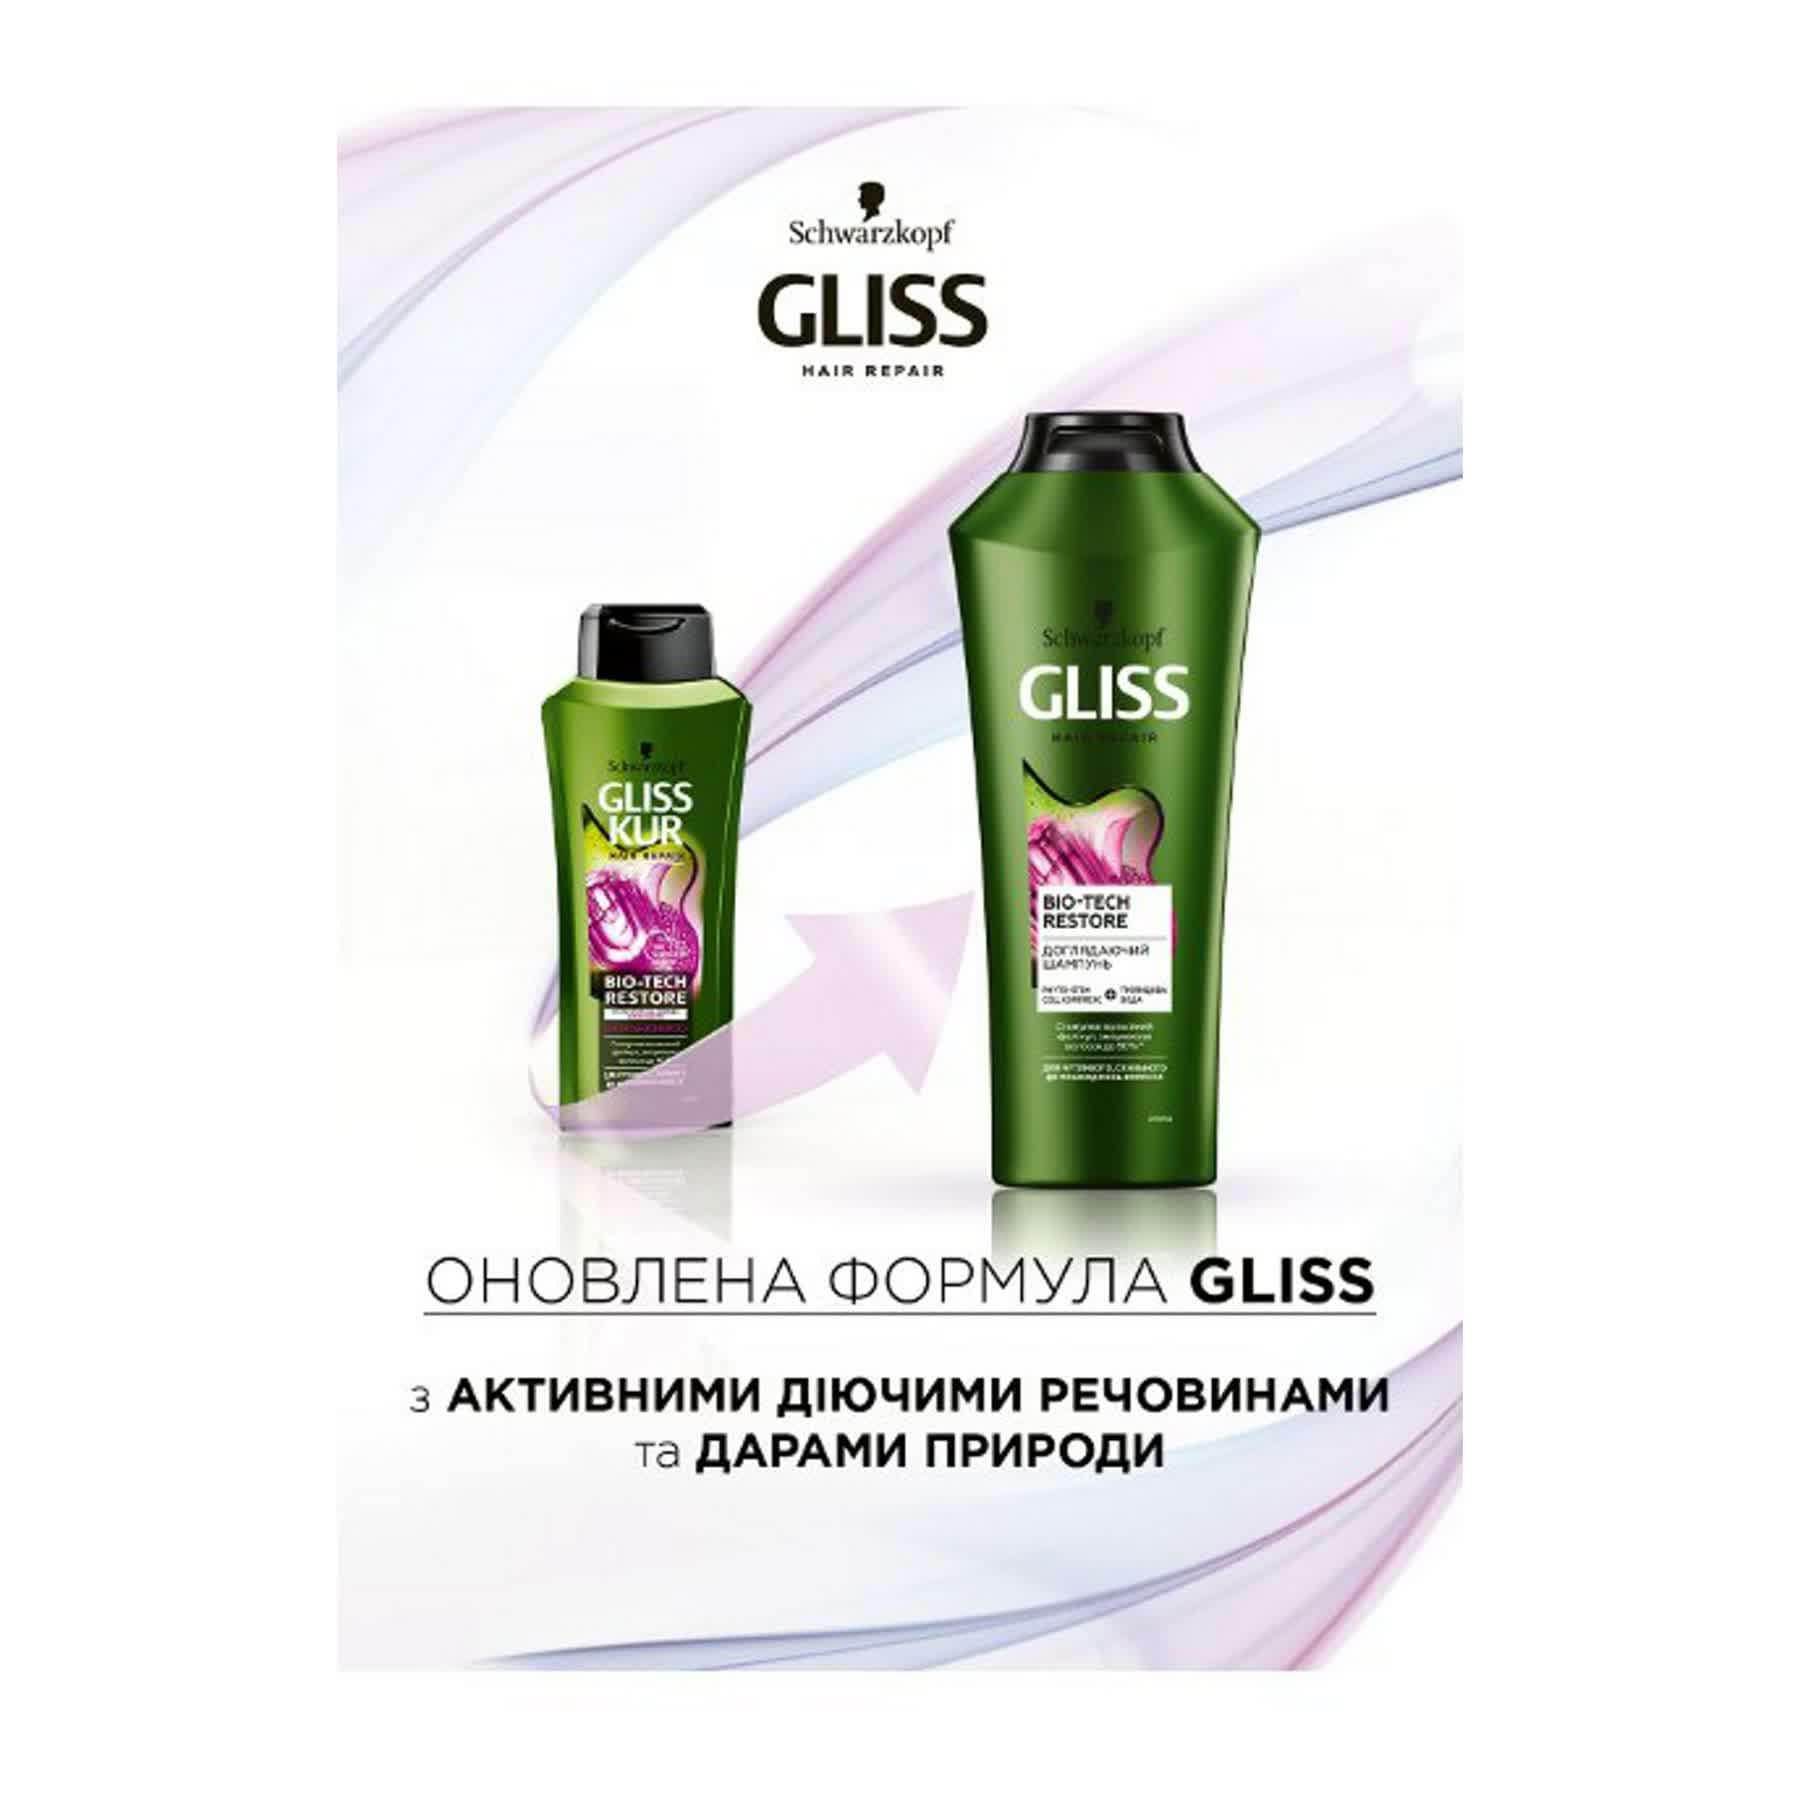 Ухаживающий шампунь GLISS Bio-Tech для чувствительных, склонных к повреждениям волос, 400 мл